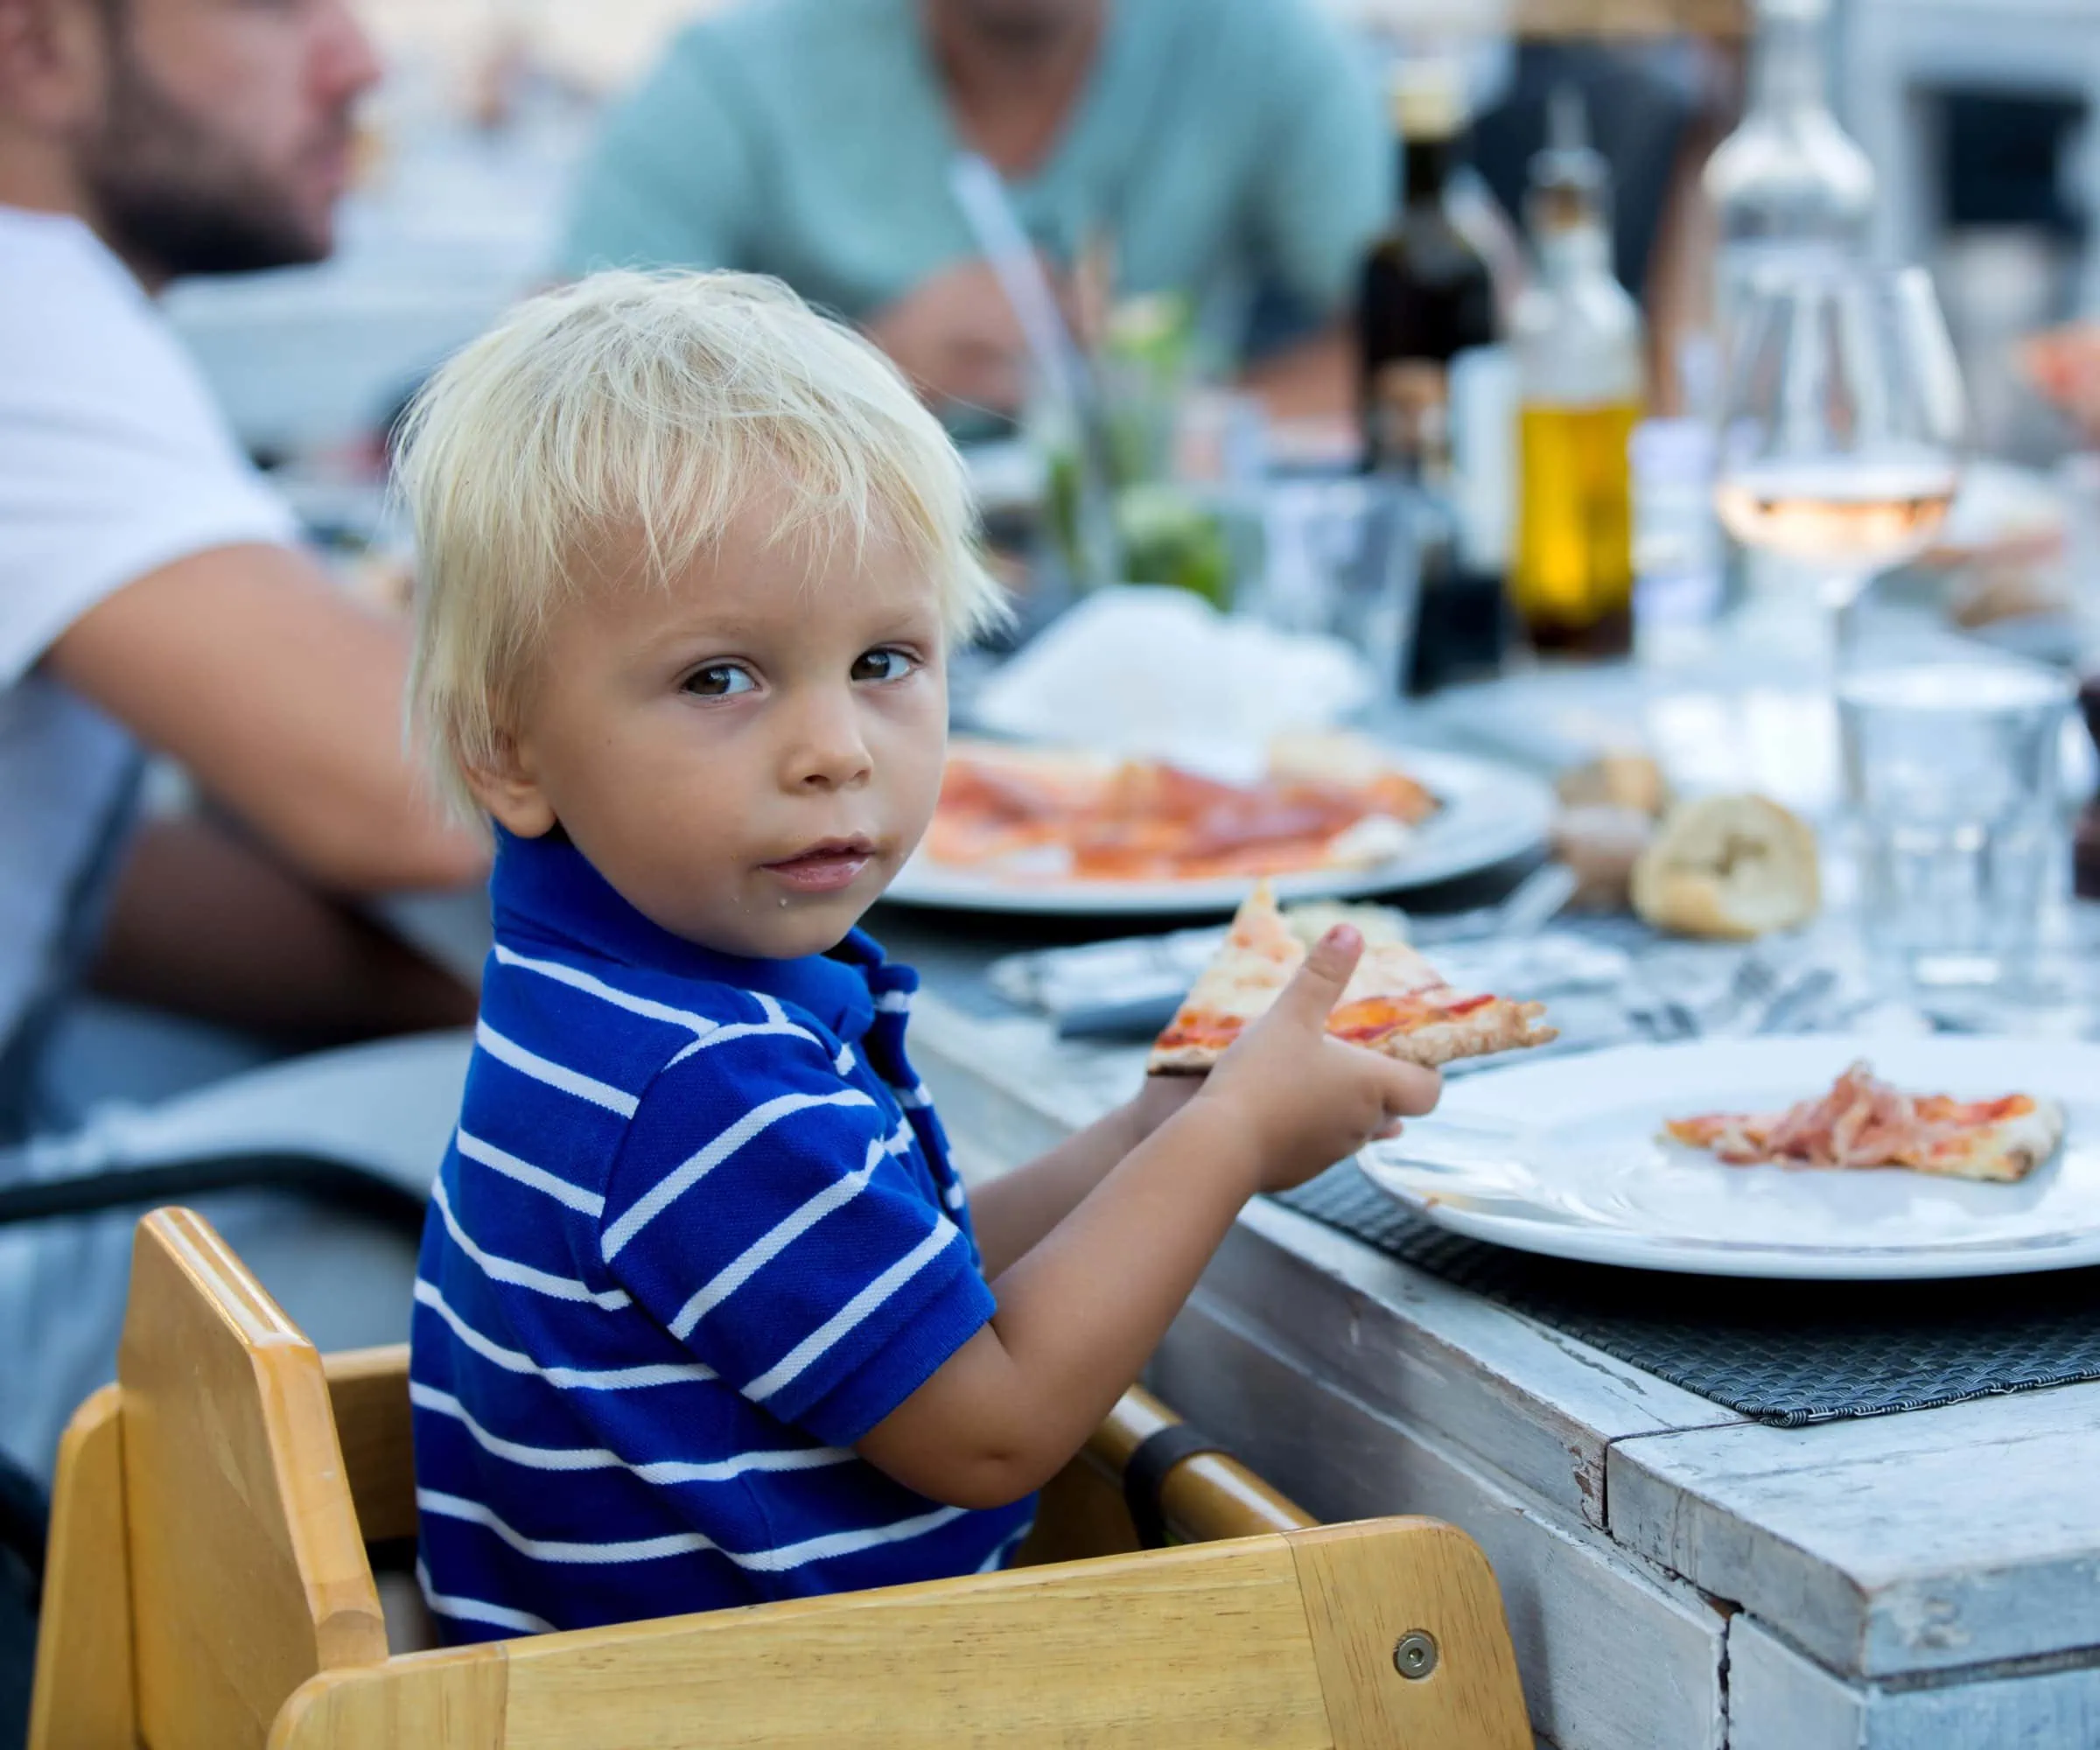 Kinderfreundliche Gastronomie in München – Tipps von Chris Lehner, worauf man beim Essengehen mit Kindern achten sollte // HIMBEER